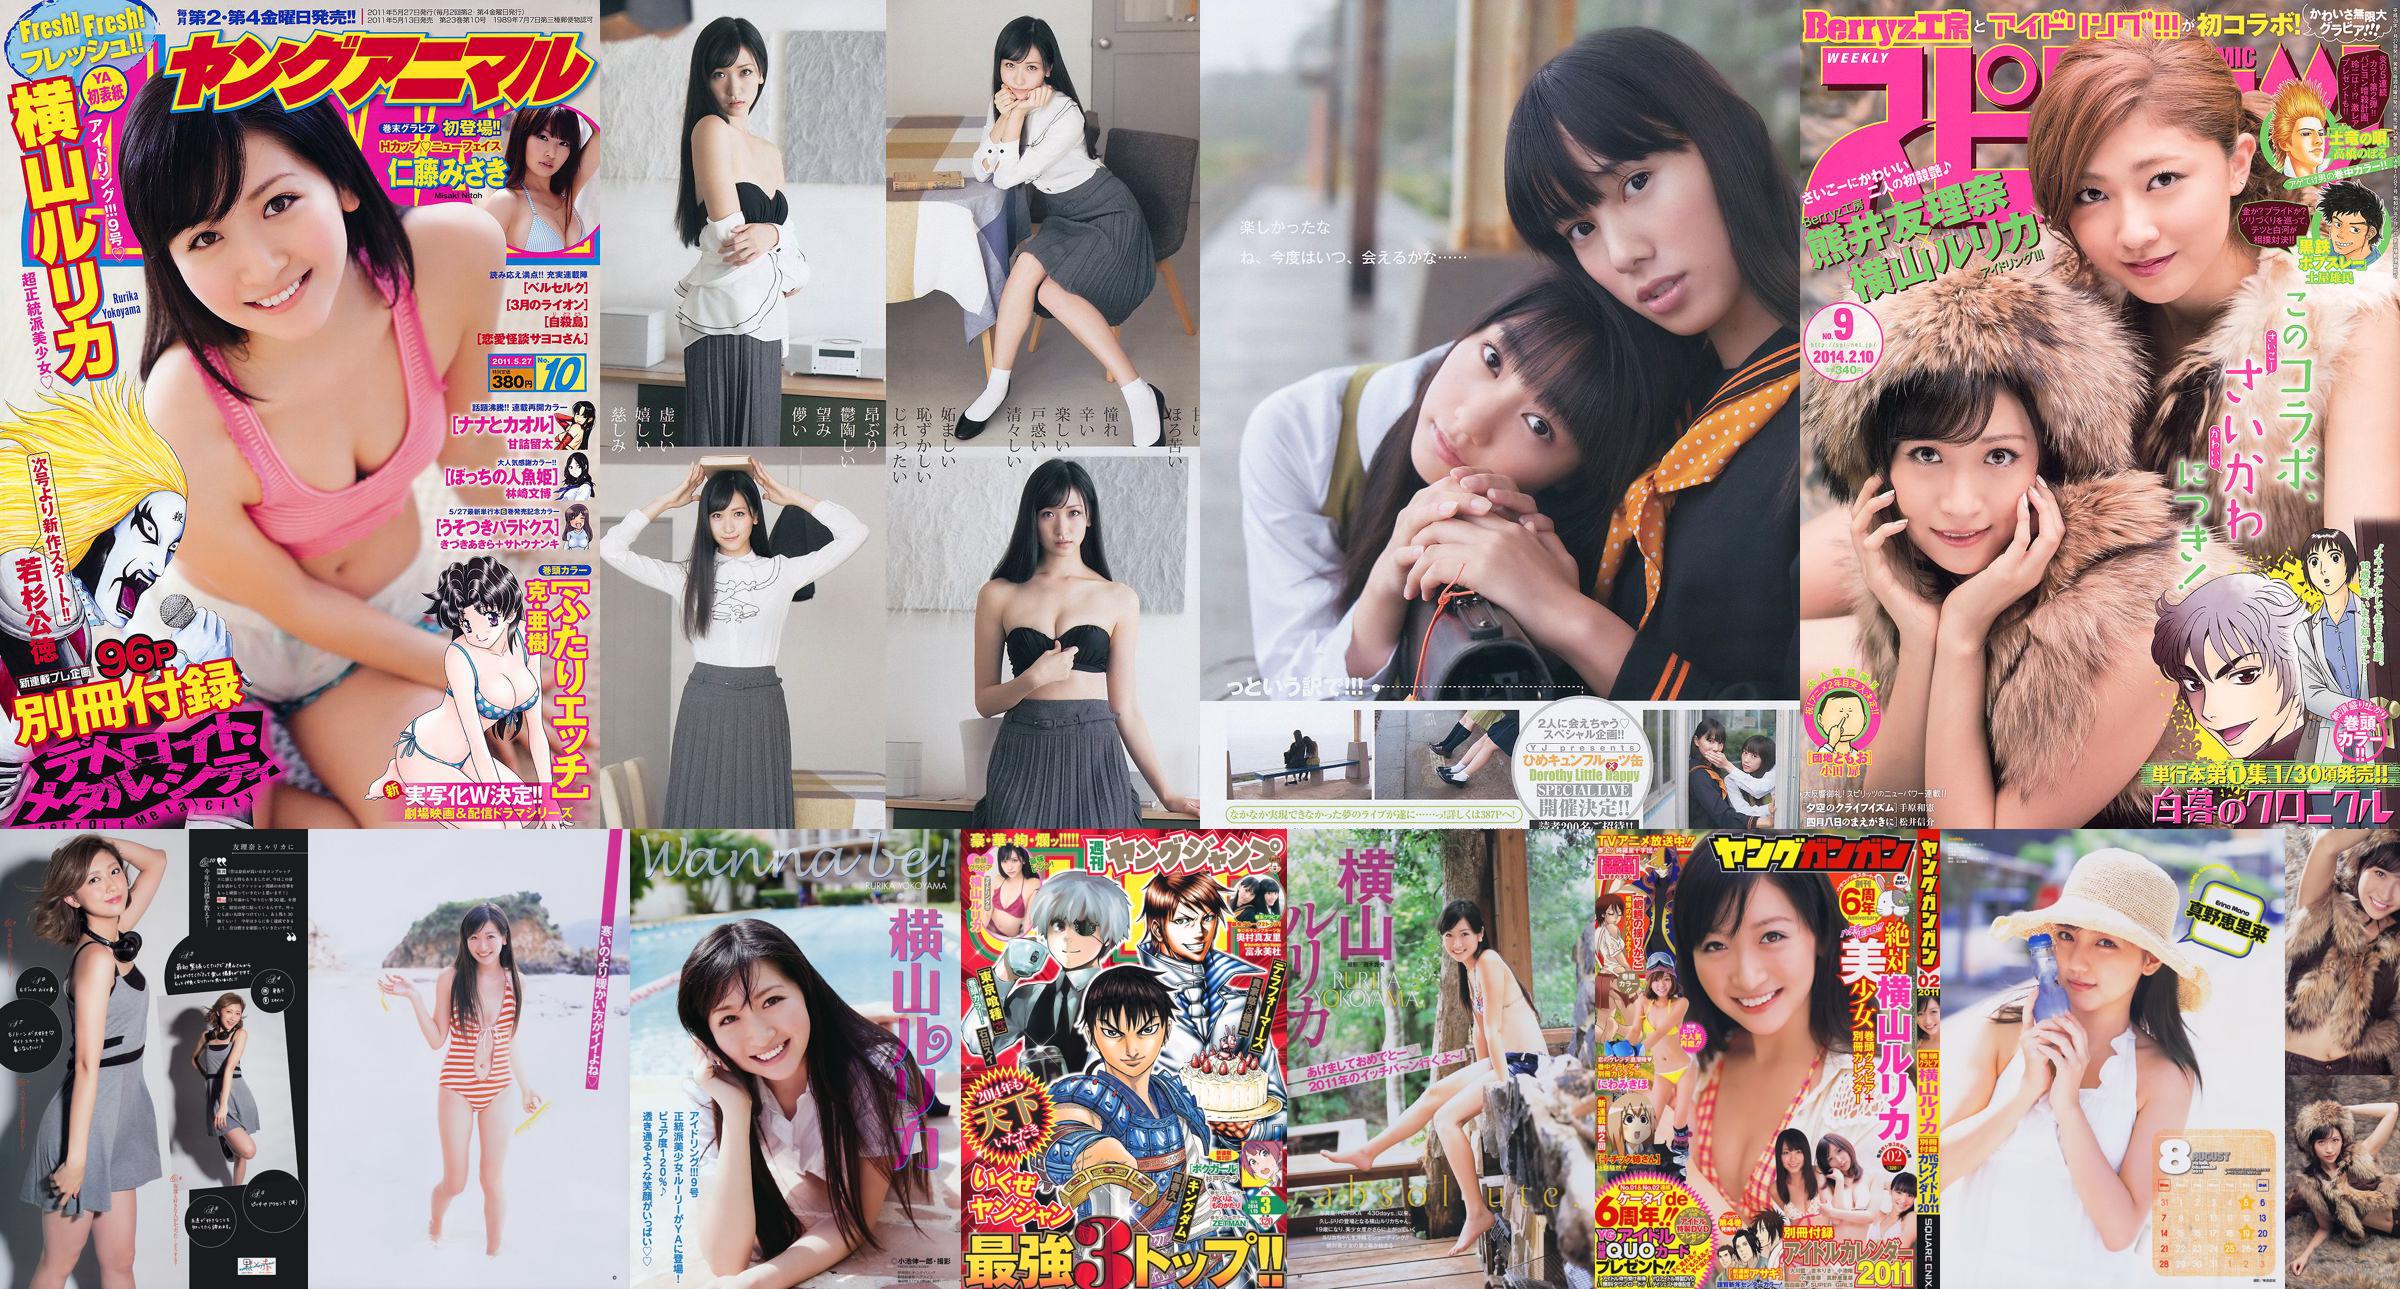 [Young Gangan] Rurika Yokoyama 2011 No.02 Photo Magazine No.3db878 Pagina 1